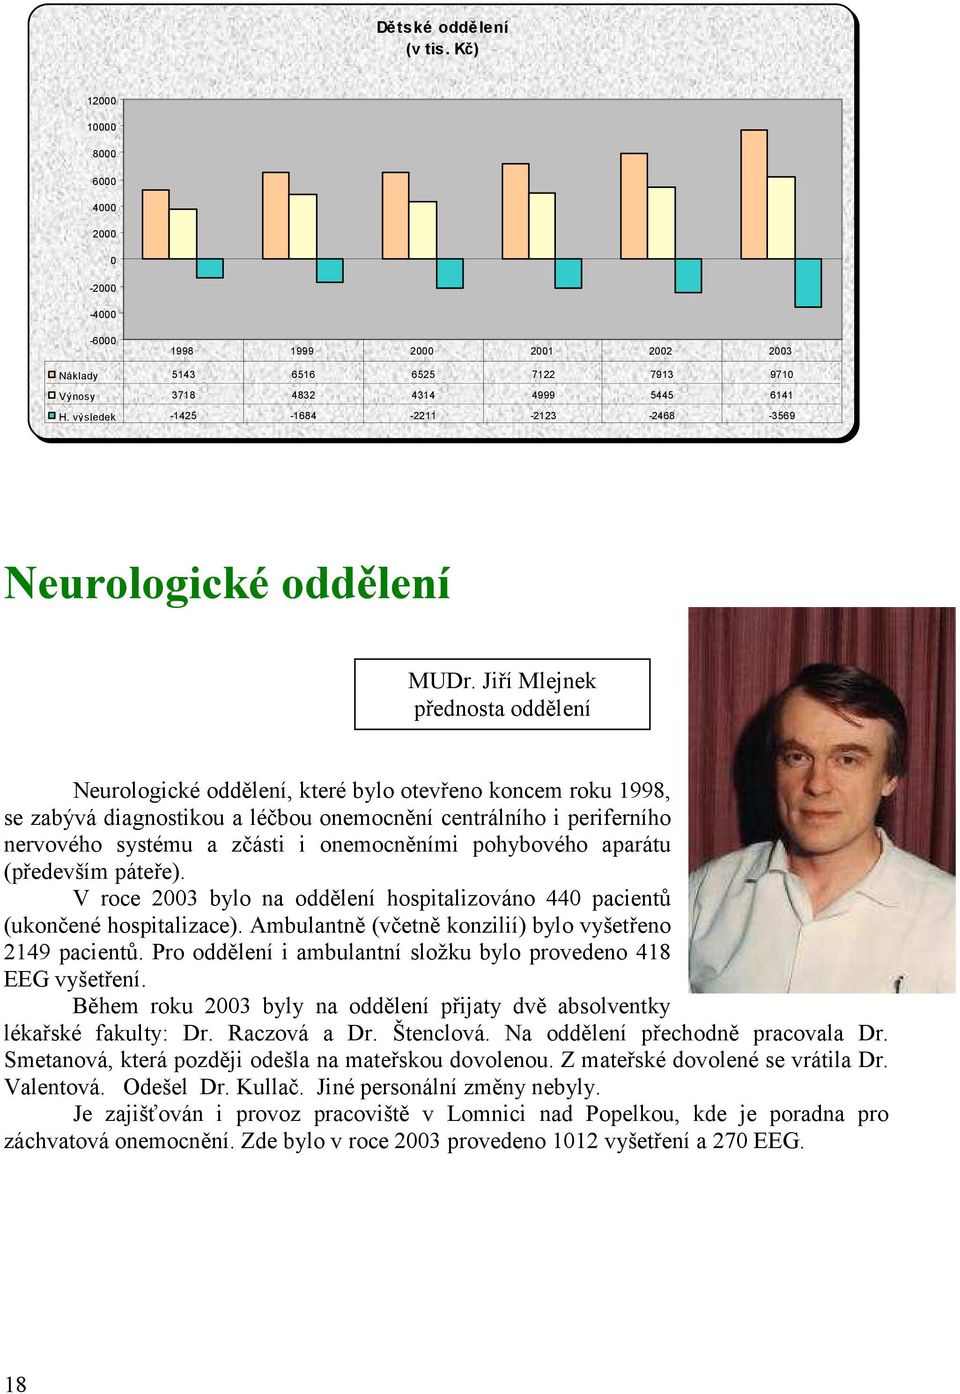 Jiří Mlejnek přednosta oddělení Neurologické oddělení, které bylo otevřeno koncem roku 1998, se zabývá diagnostikou a léčbou onemocnění centrálního i periferního nervového systému a zčásti i